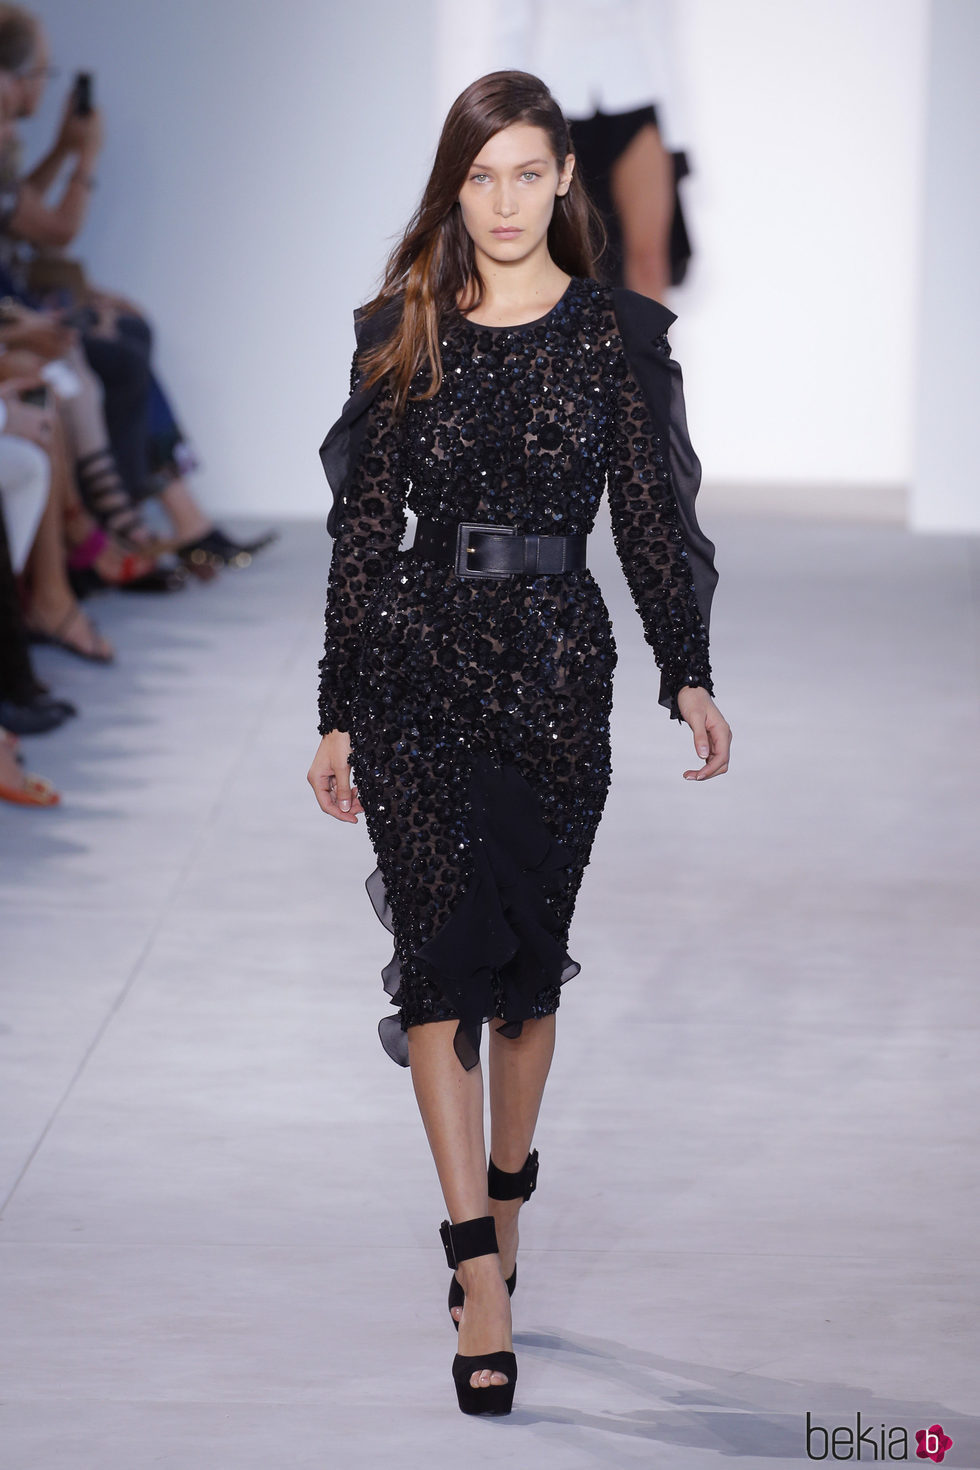 Bella Hadid desfilando para Michael Kors en Nueva York Fashion Week primavera/verano 2017